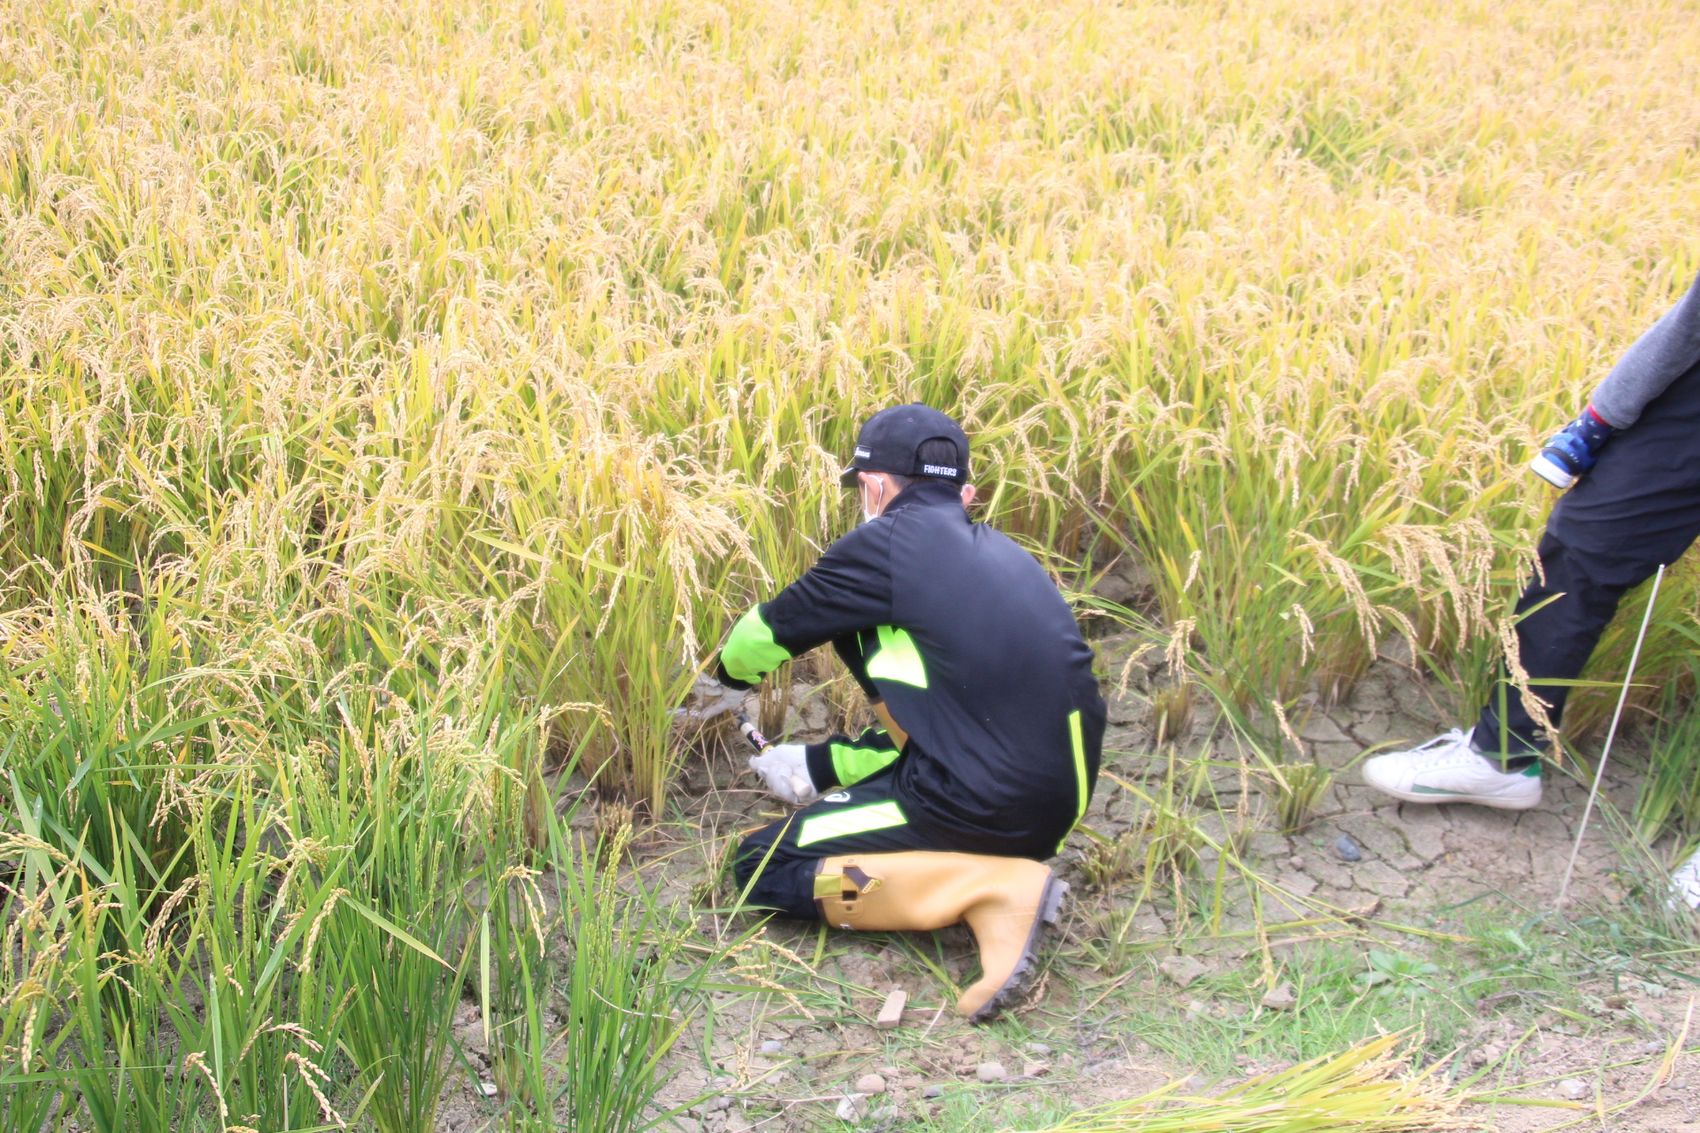 田んぼで稲に囲まれながらしゃがんで鎌を使い稲刈りをしている、帽子をかぶり長靴を履いた男の子の写真